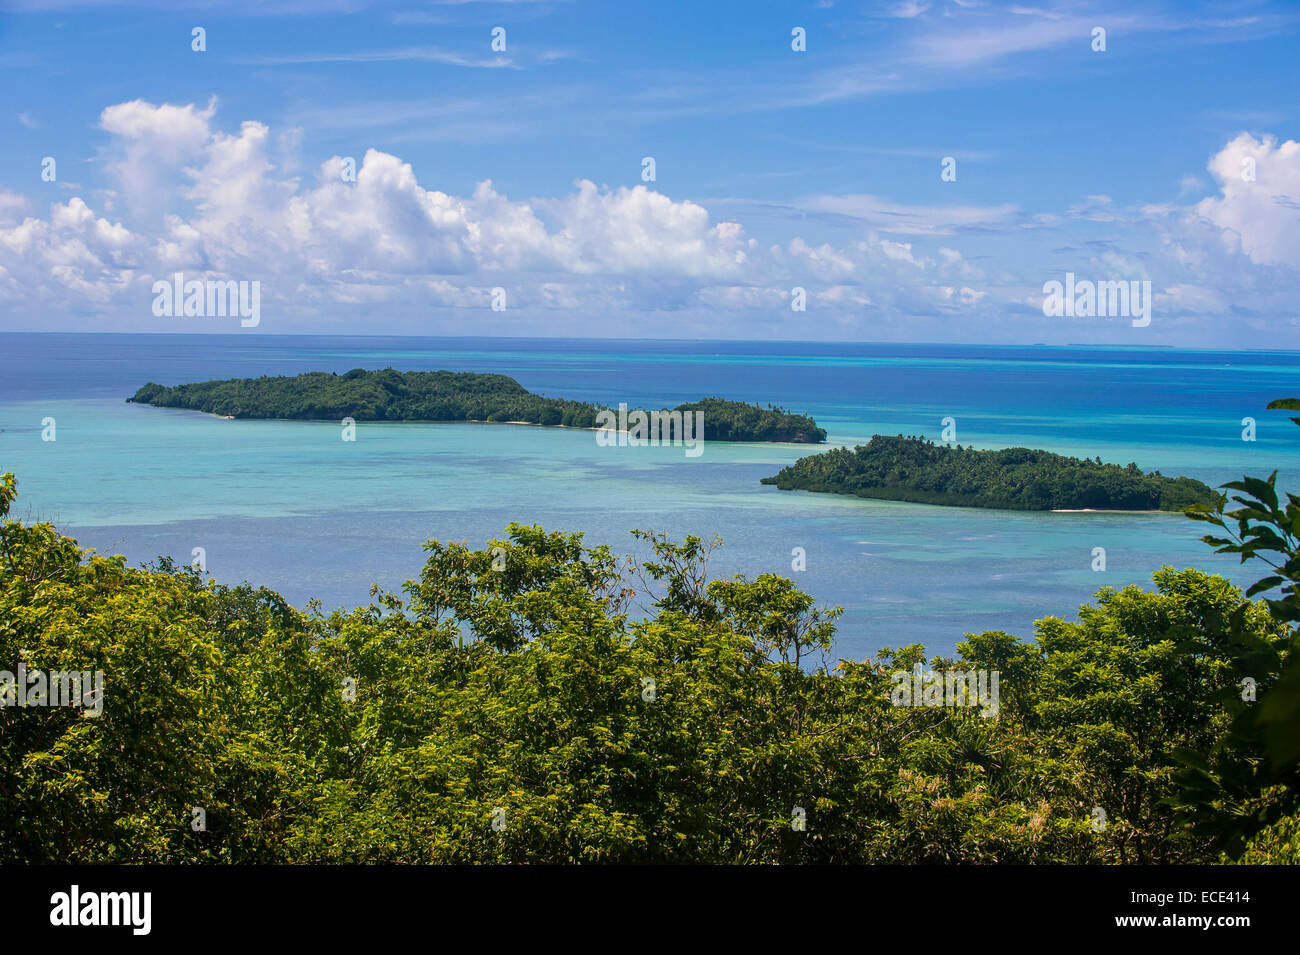 Vista sobre la isla de Babeldaob y algunos islotes, Palau, Micronesia Foto de stock